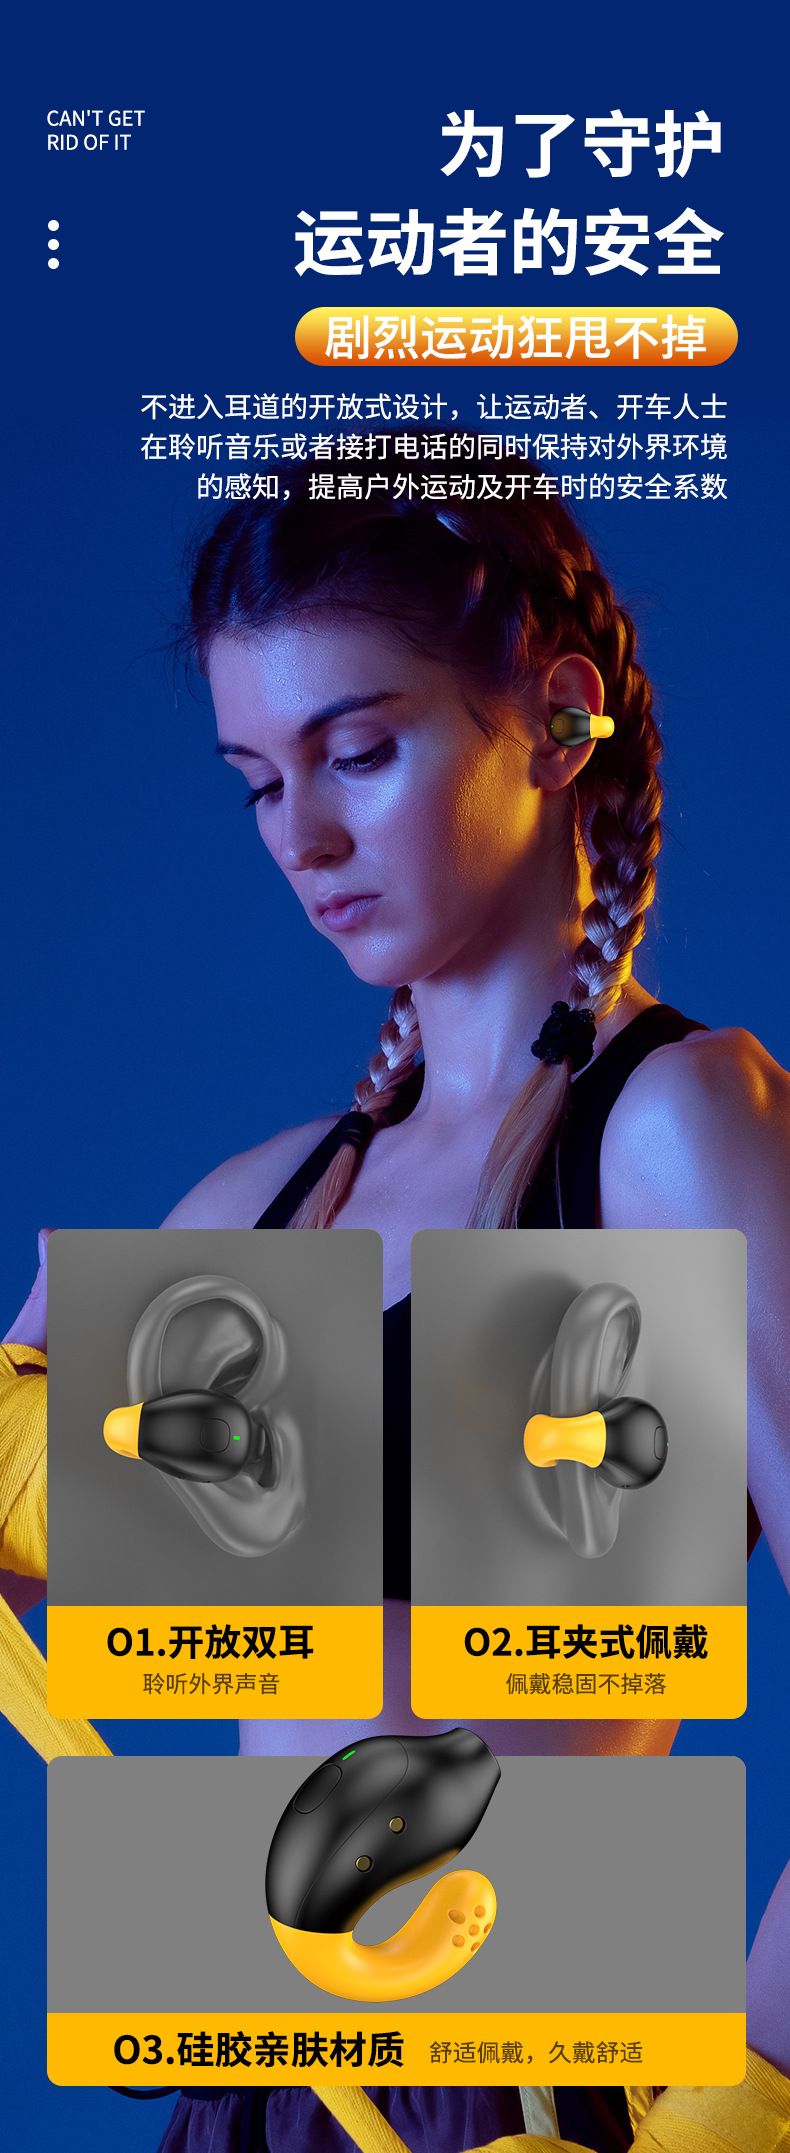 安奈尔 无线蓝牙耳夹式耳机R18大电量数显屏幕